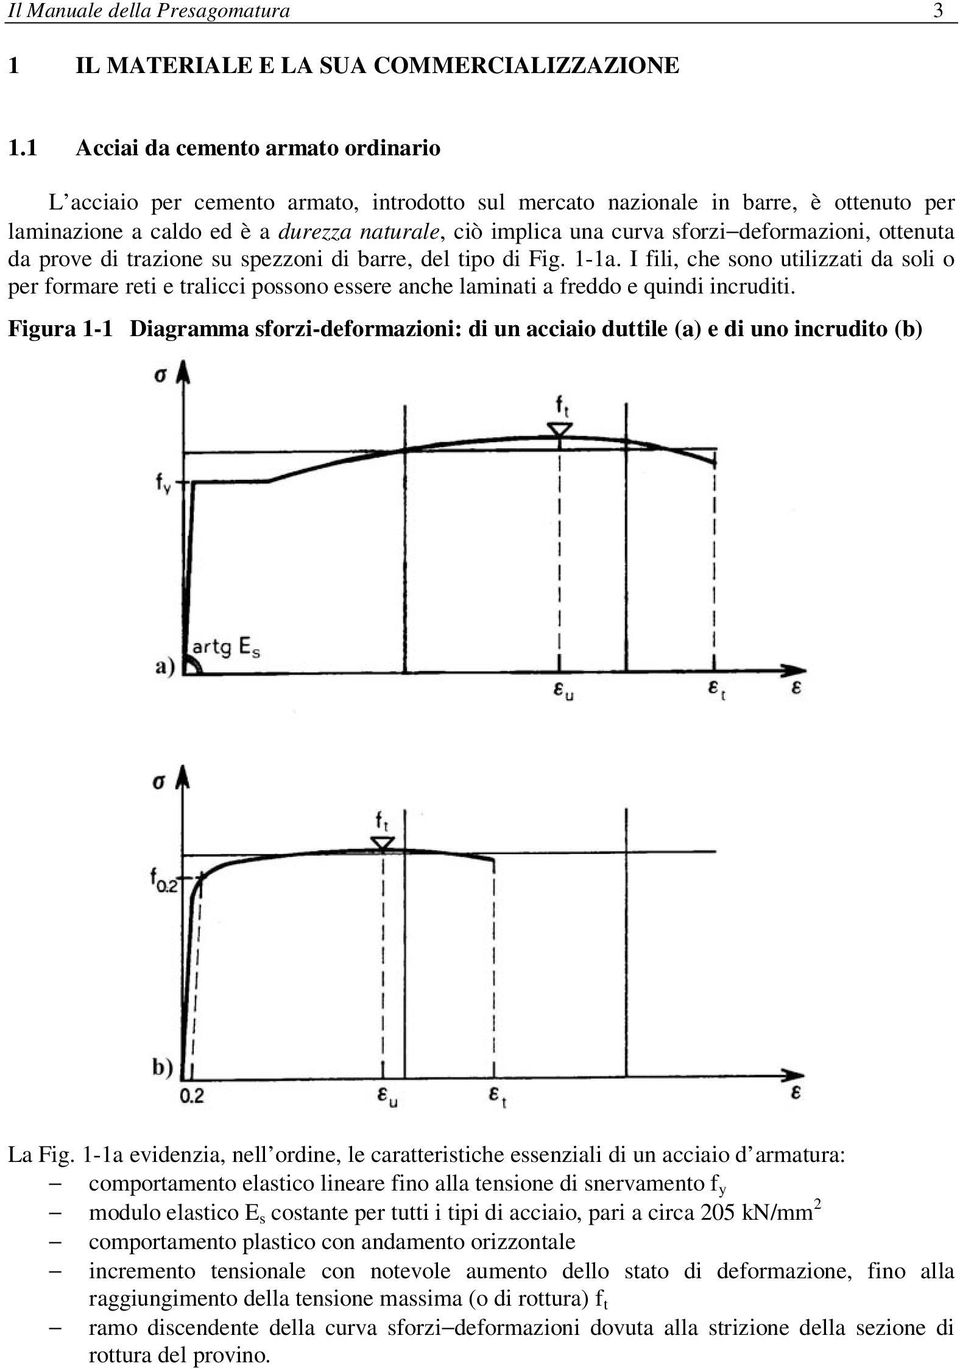 deformazioni, ottenuta da prove di trazione su spezzoni di barre, del tipo di Fig. 1-1a.